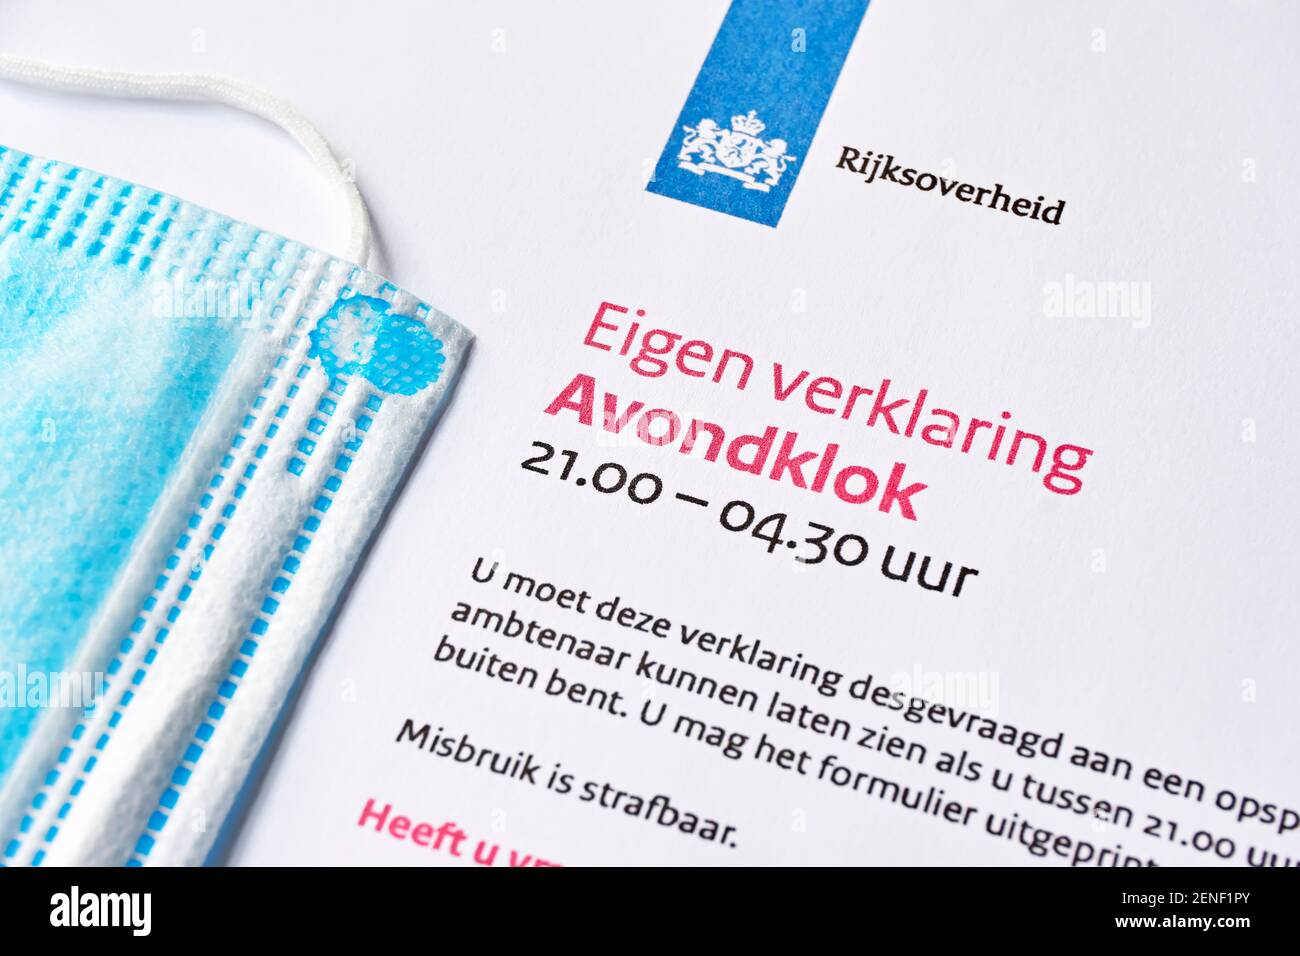 Documento di autocdichiarazione olandese per il coprifuoco. L'obiettivo è ridurre il tasso di infezione delle varianti di coronavirus originale e nuova per prevenire COVID-19. Foto Stock